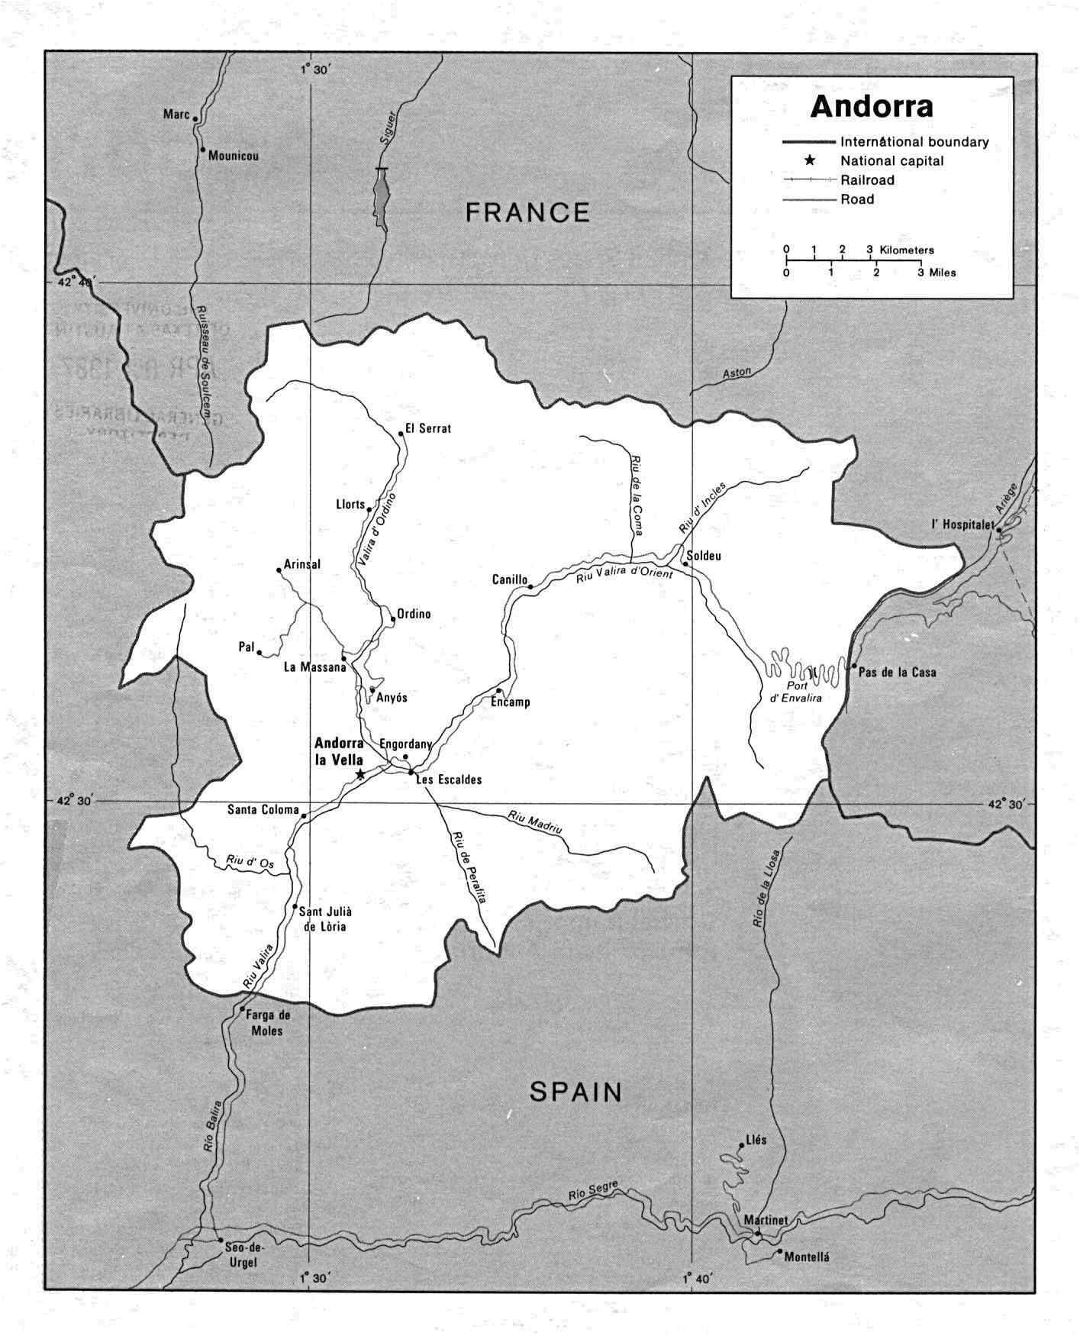 Mapa político grande de Andorra con los caminos y ciudades